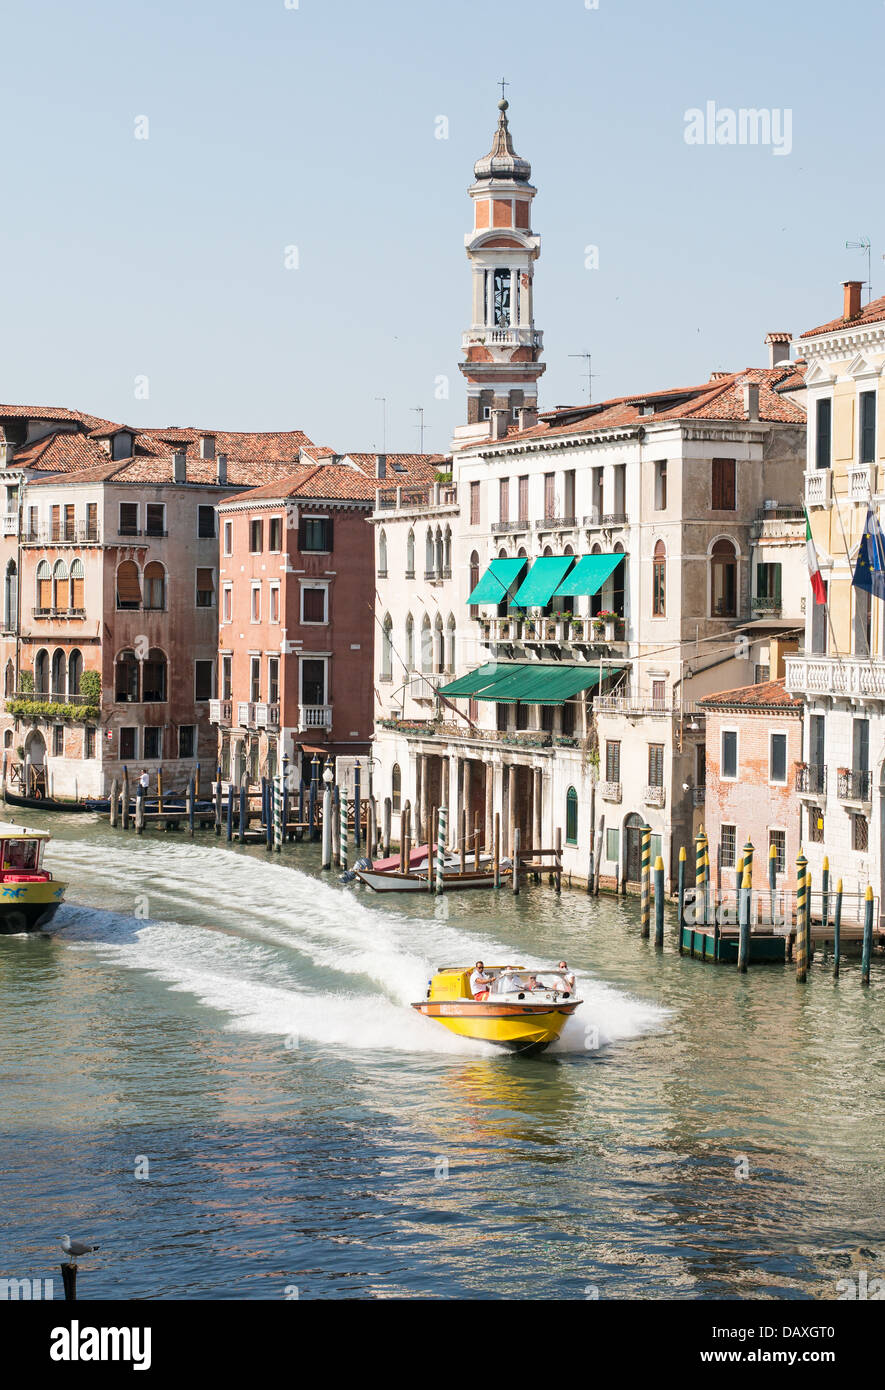 Una ambulancia de agua velocidades a lo largo del Grand Canal Venecia, visto desde el Puente de Rialto Foto de stock